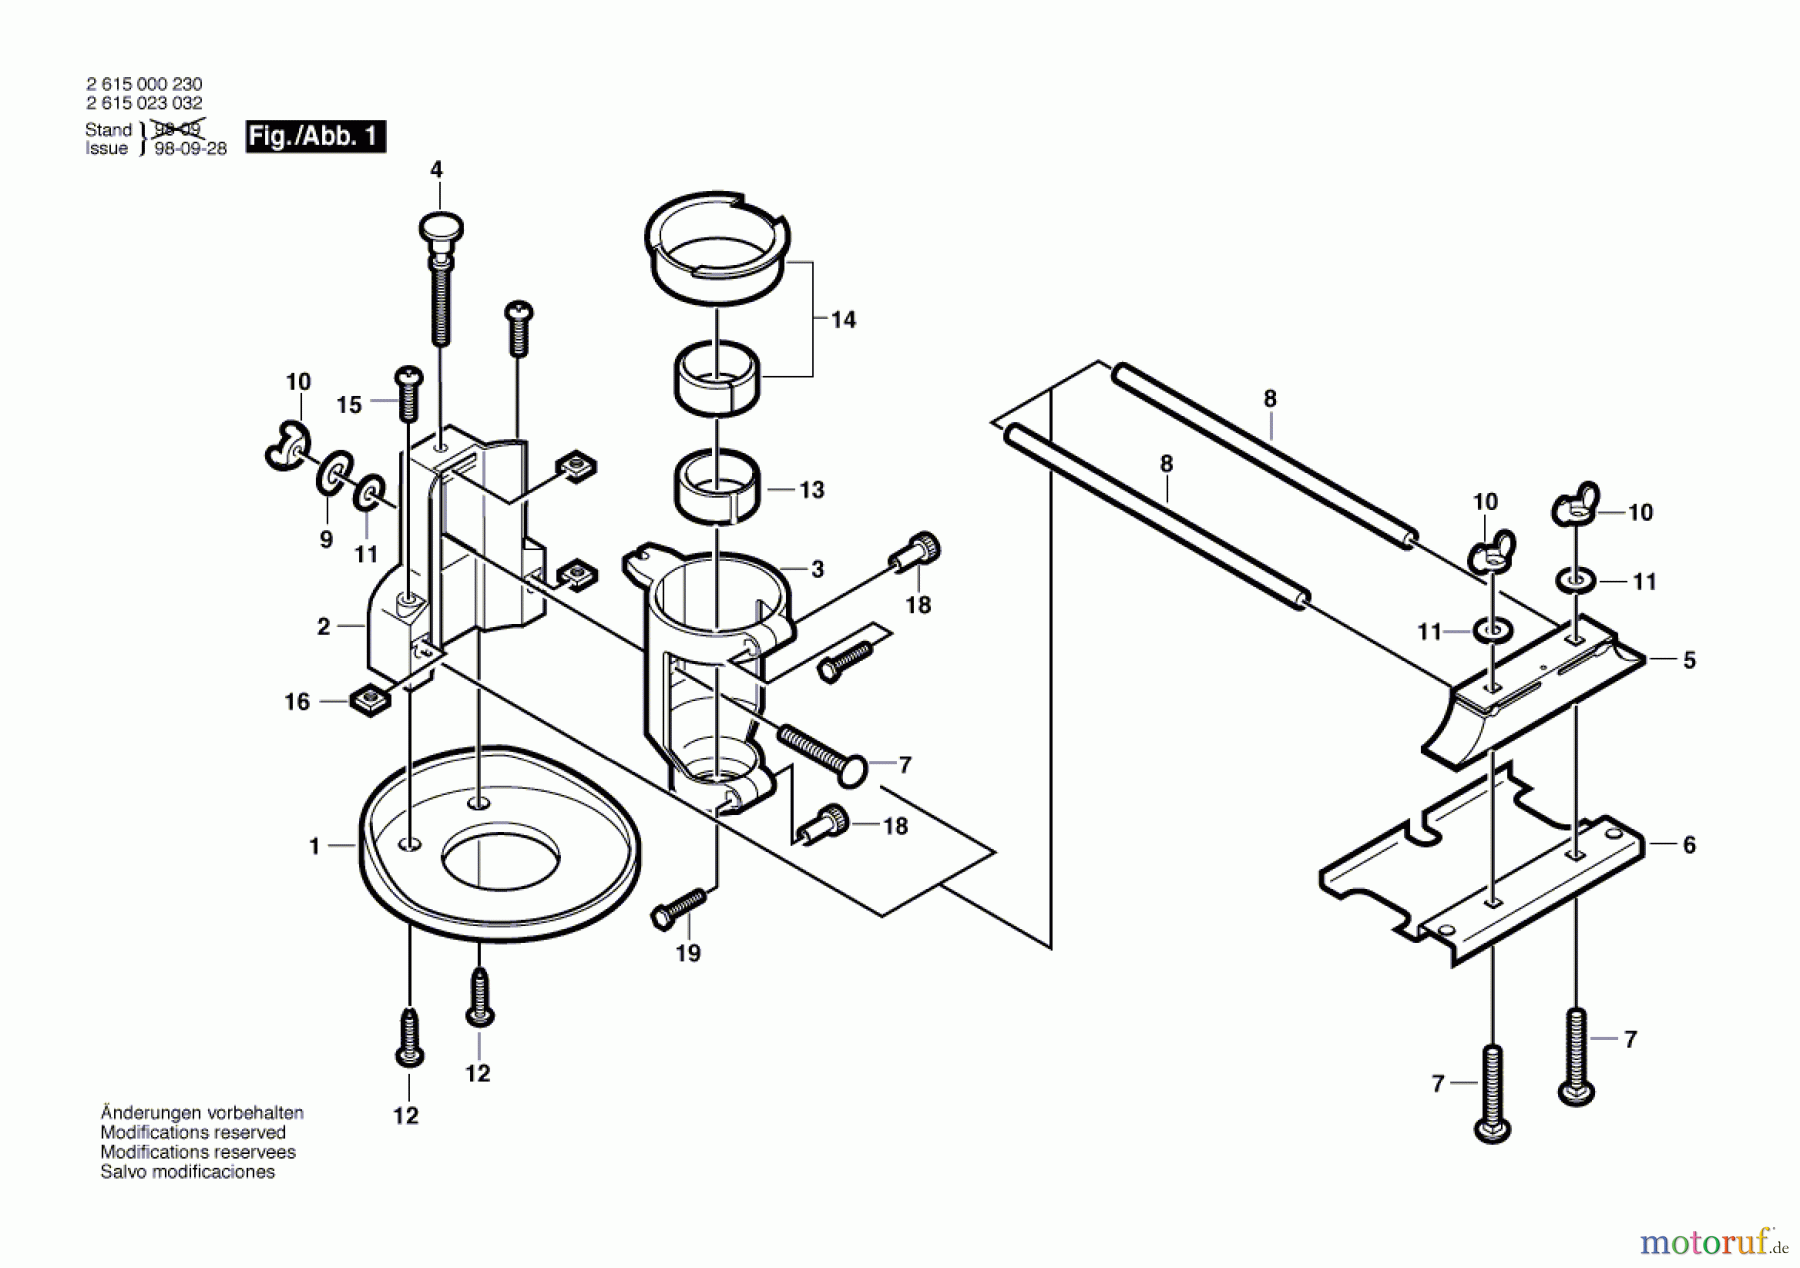  Bosch Werkzeug Fräsvorrichtung ---- Seite 1